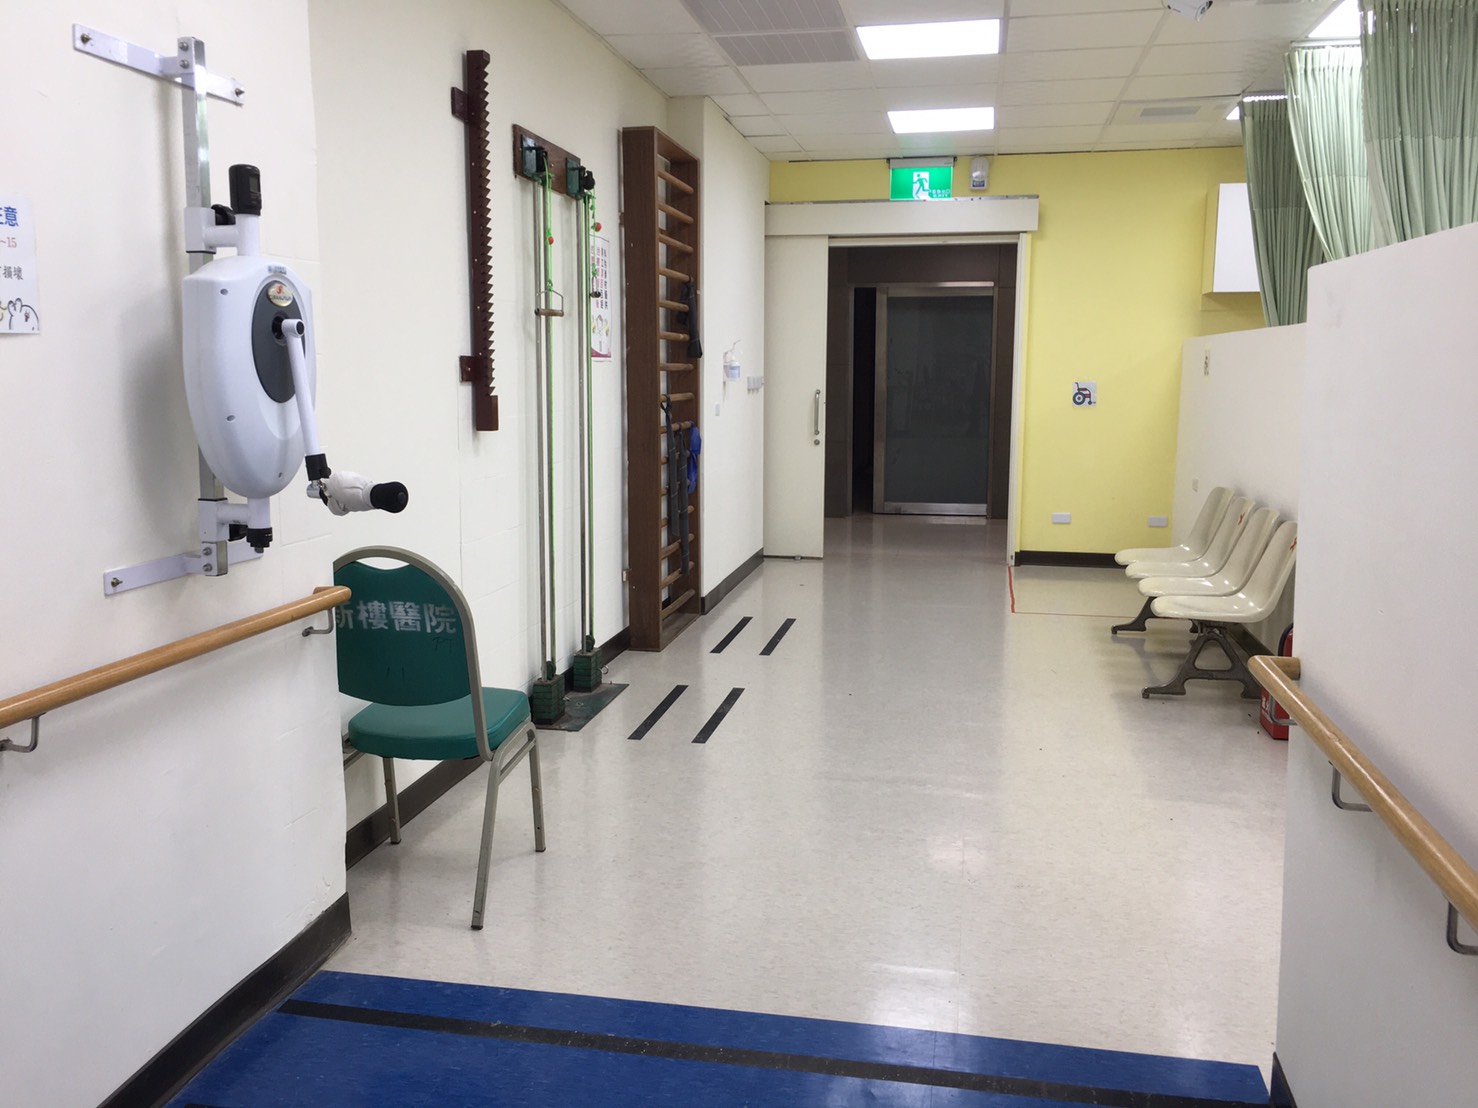 本科運動治療室具有寬廣的空間及各式運動器材